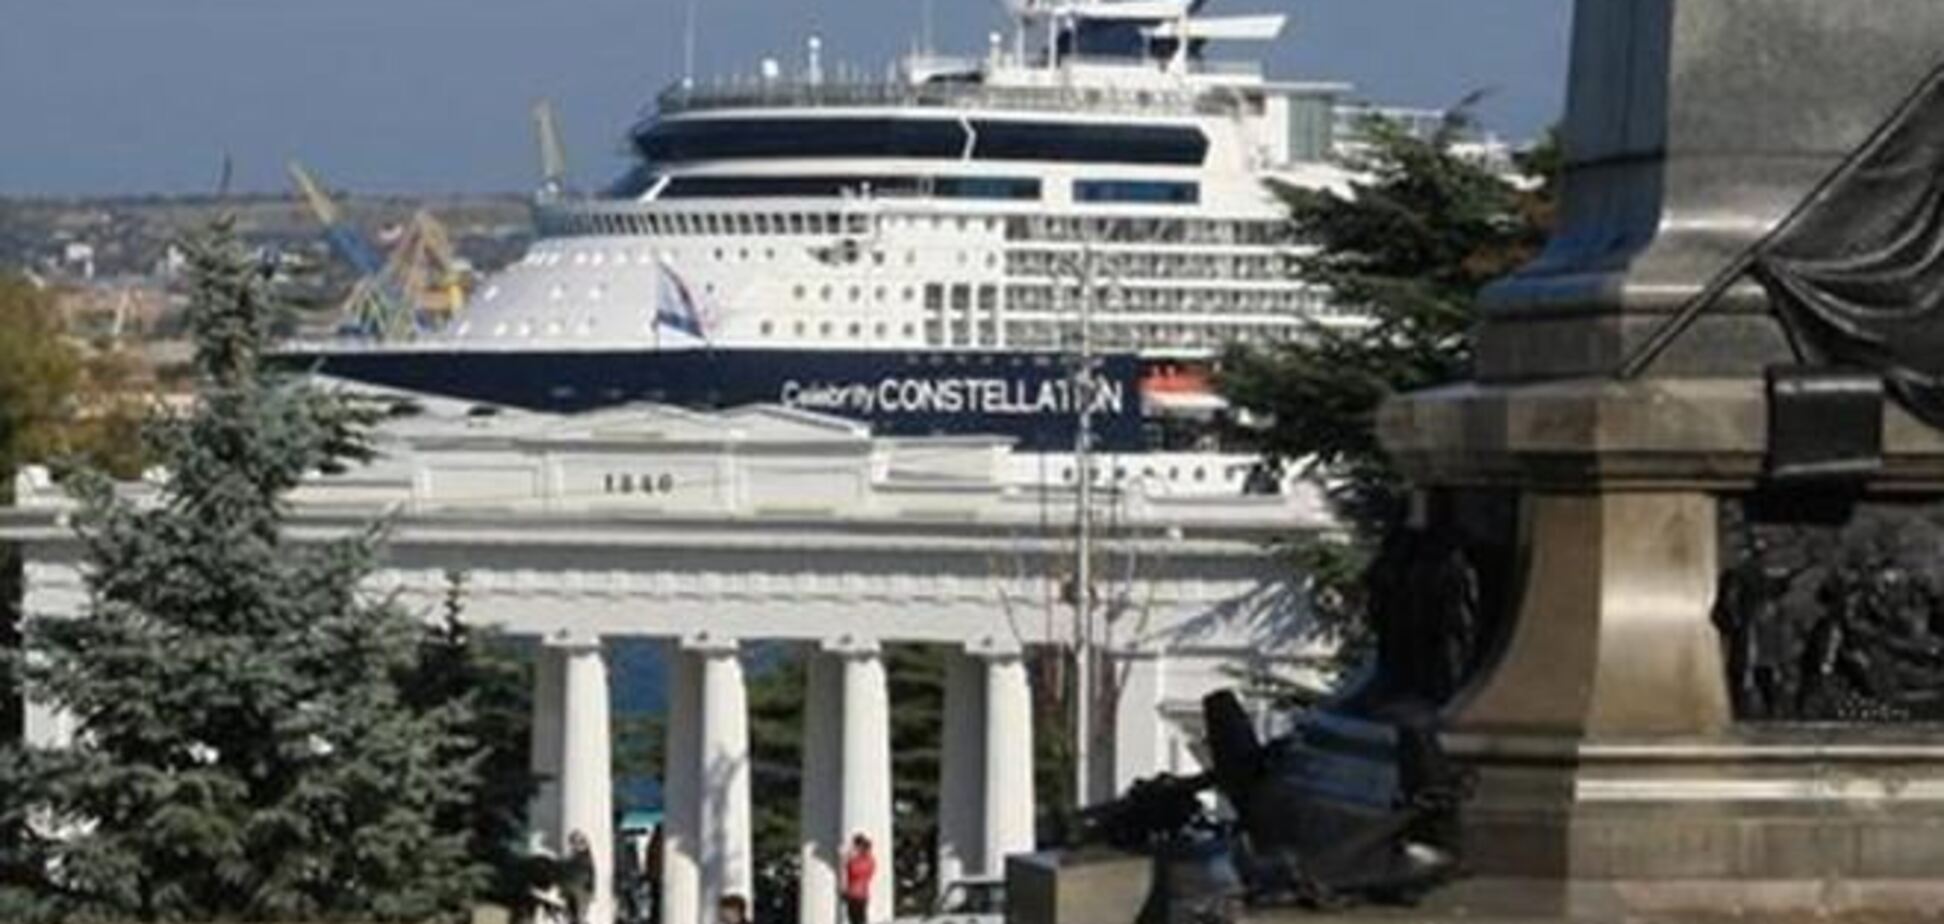 Величезний лайнер довжиною 300 м не зміг причалити до берега в Севастополі